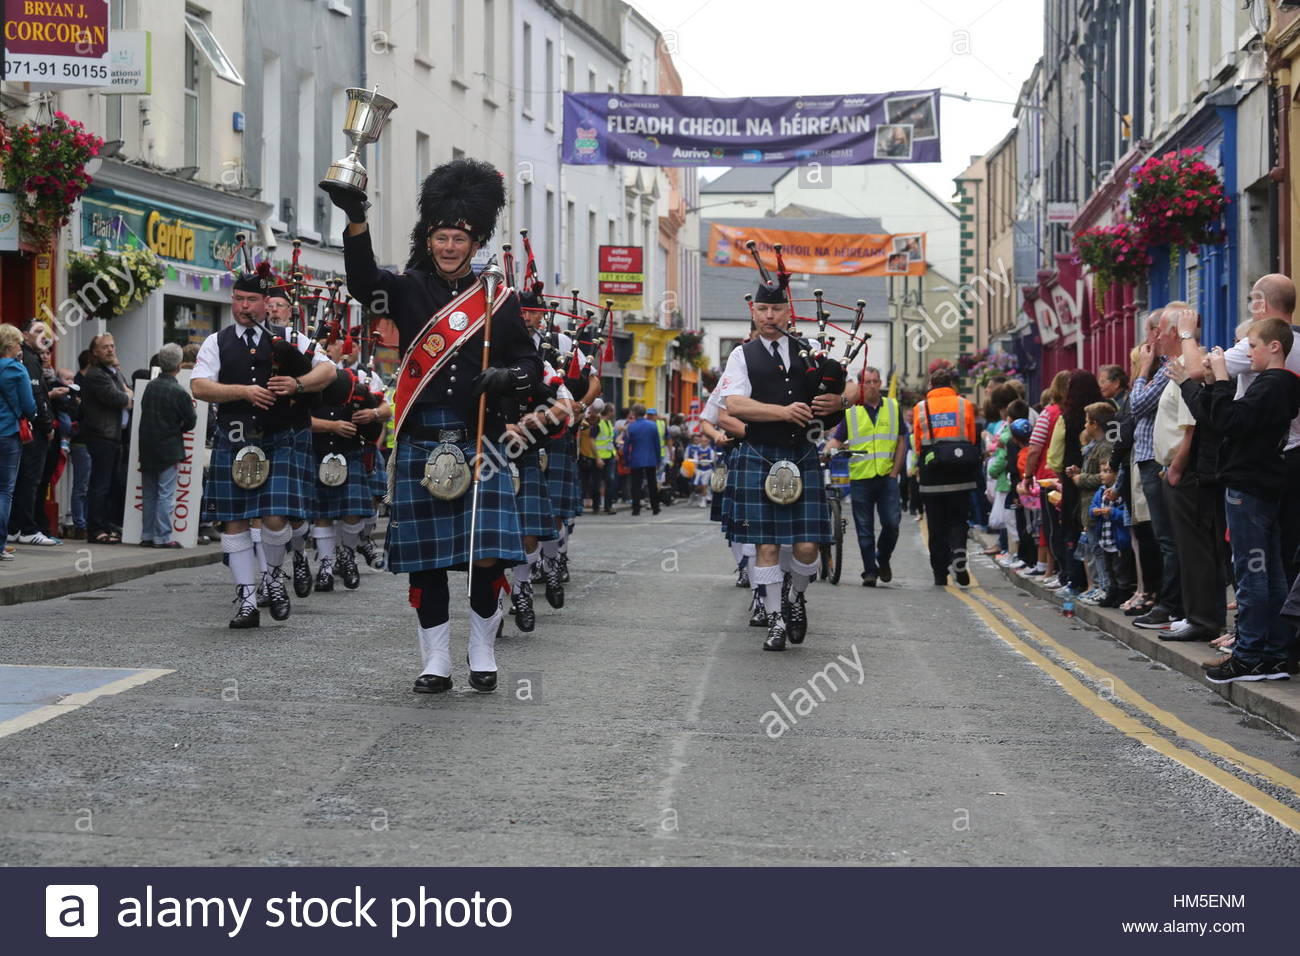 Un tubo di marching band sfilate attraverso la cittadina di Sligo in Irlanda l'ultimo giorno del Fleadh Cheoil, un tradizionale festival di musica irlandese. Foto Stock